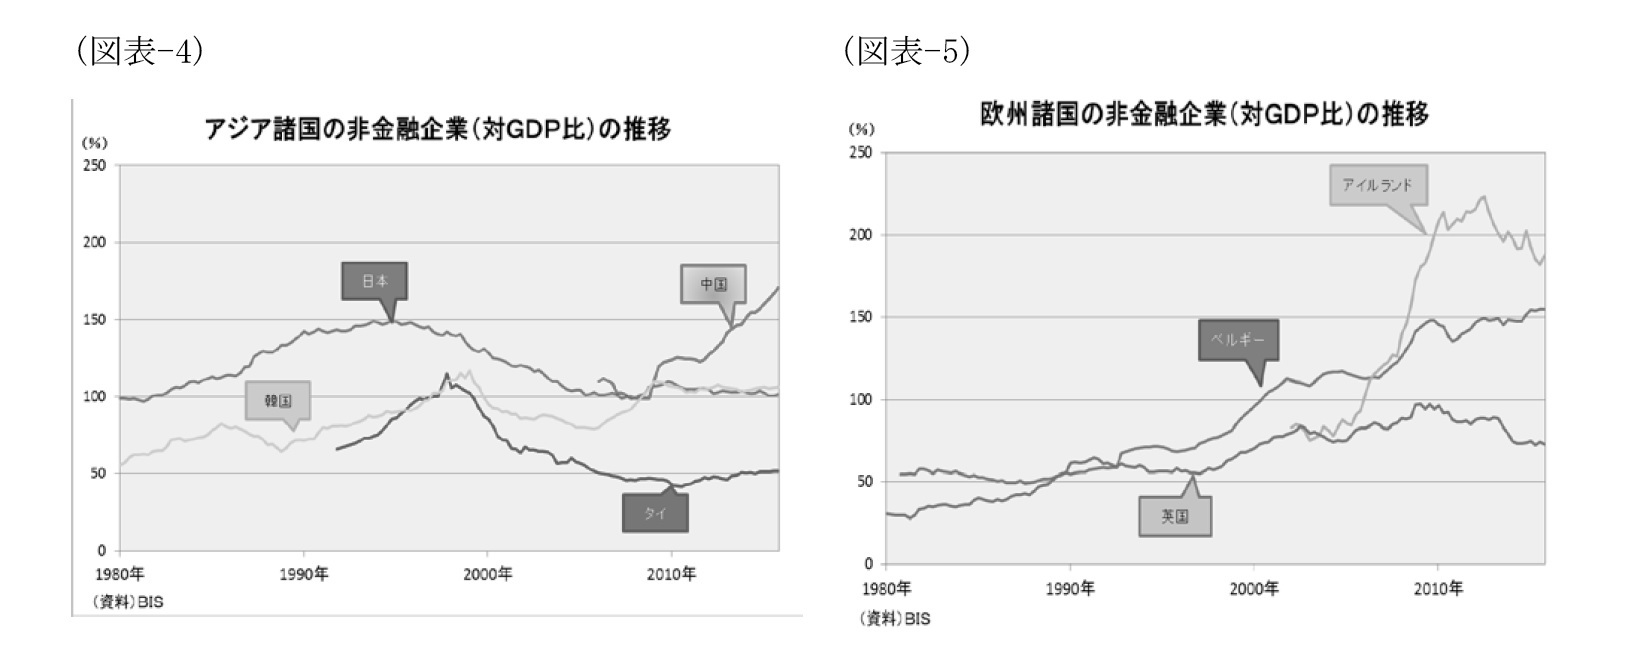 （図表-4）アジア諸国の非金融企業（対GDP比）の推移/（図表-5）欧州諸国の非金融企業（対GDP比）の推移